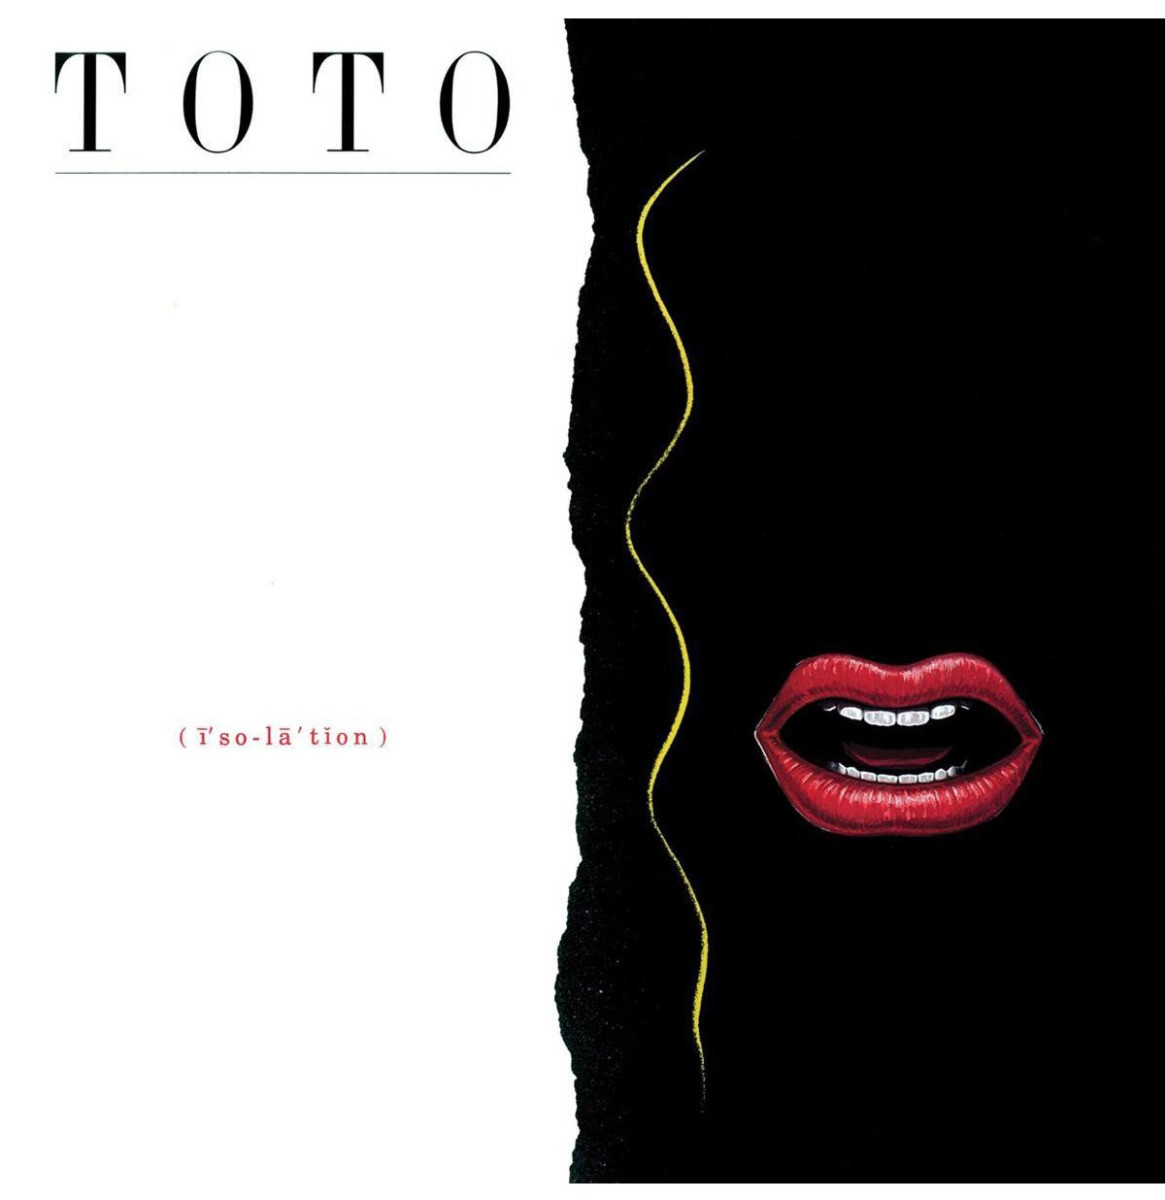 Toto - Isolation LP